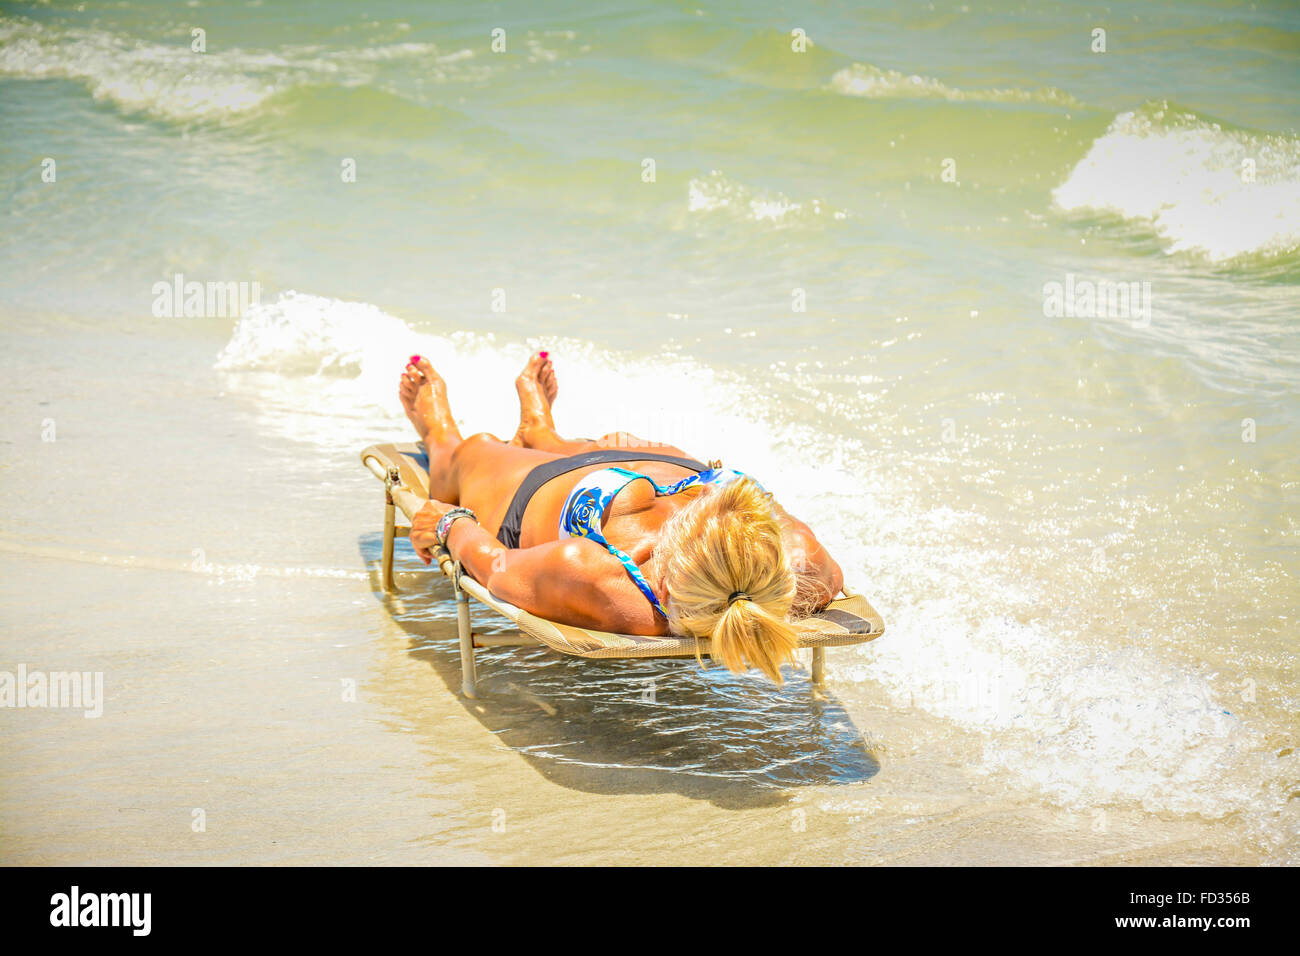 Eine Solo Frau liegt Gesicht oben und horizontal auf den Strand liegen umgeben von den sanft brechenden Wellen der Brandung am Strand Stockfoto